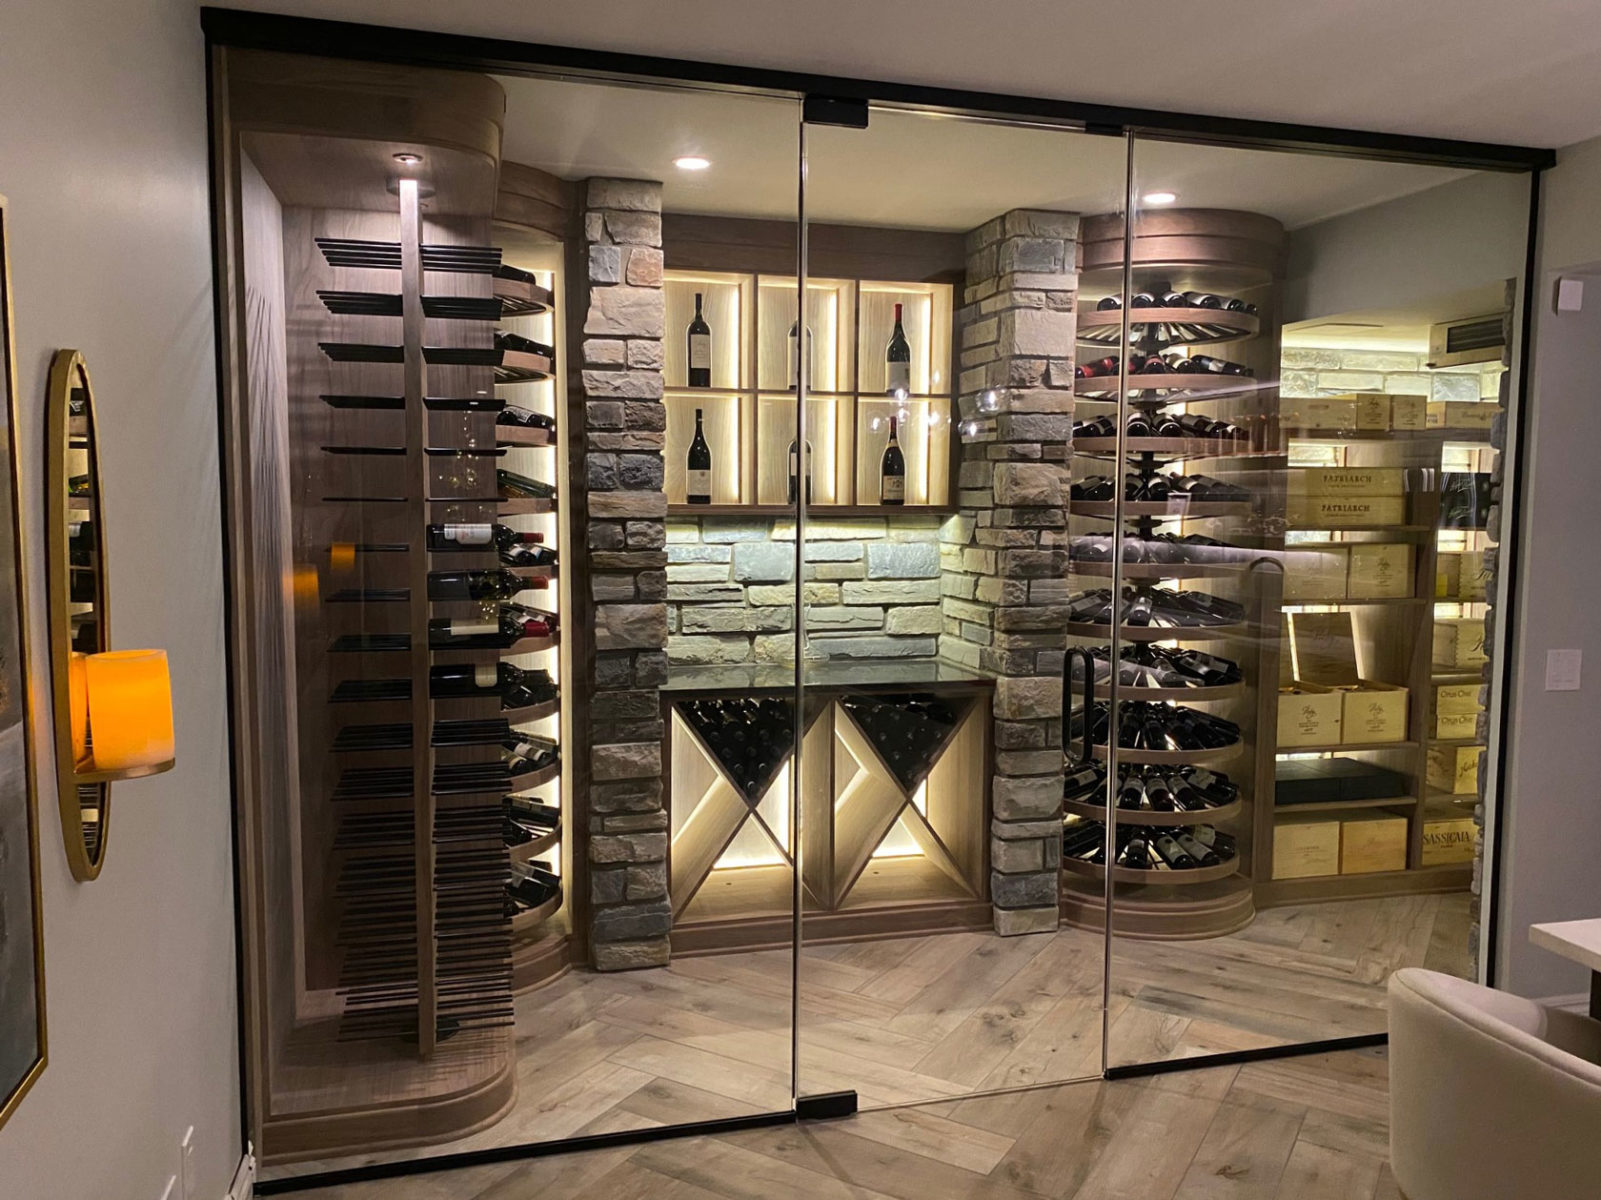 Clarkston Michigan Glass Enclosed Wine Cellar